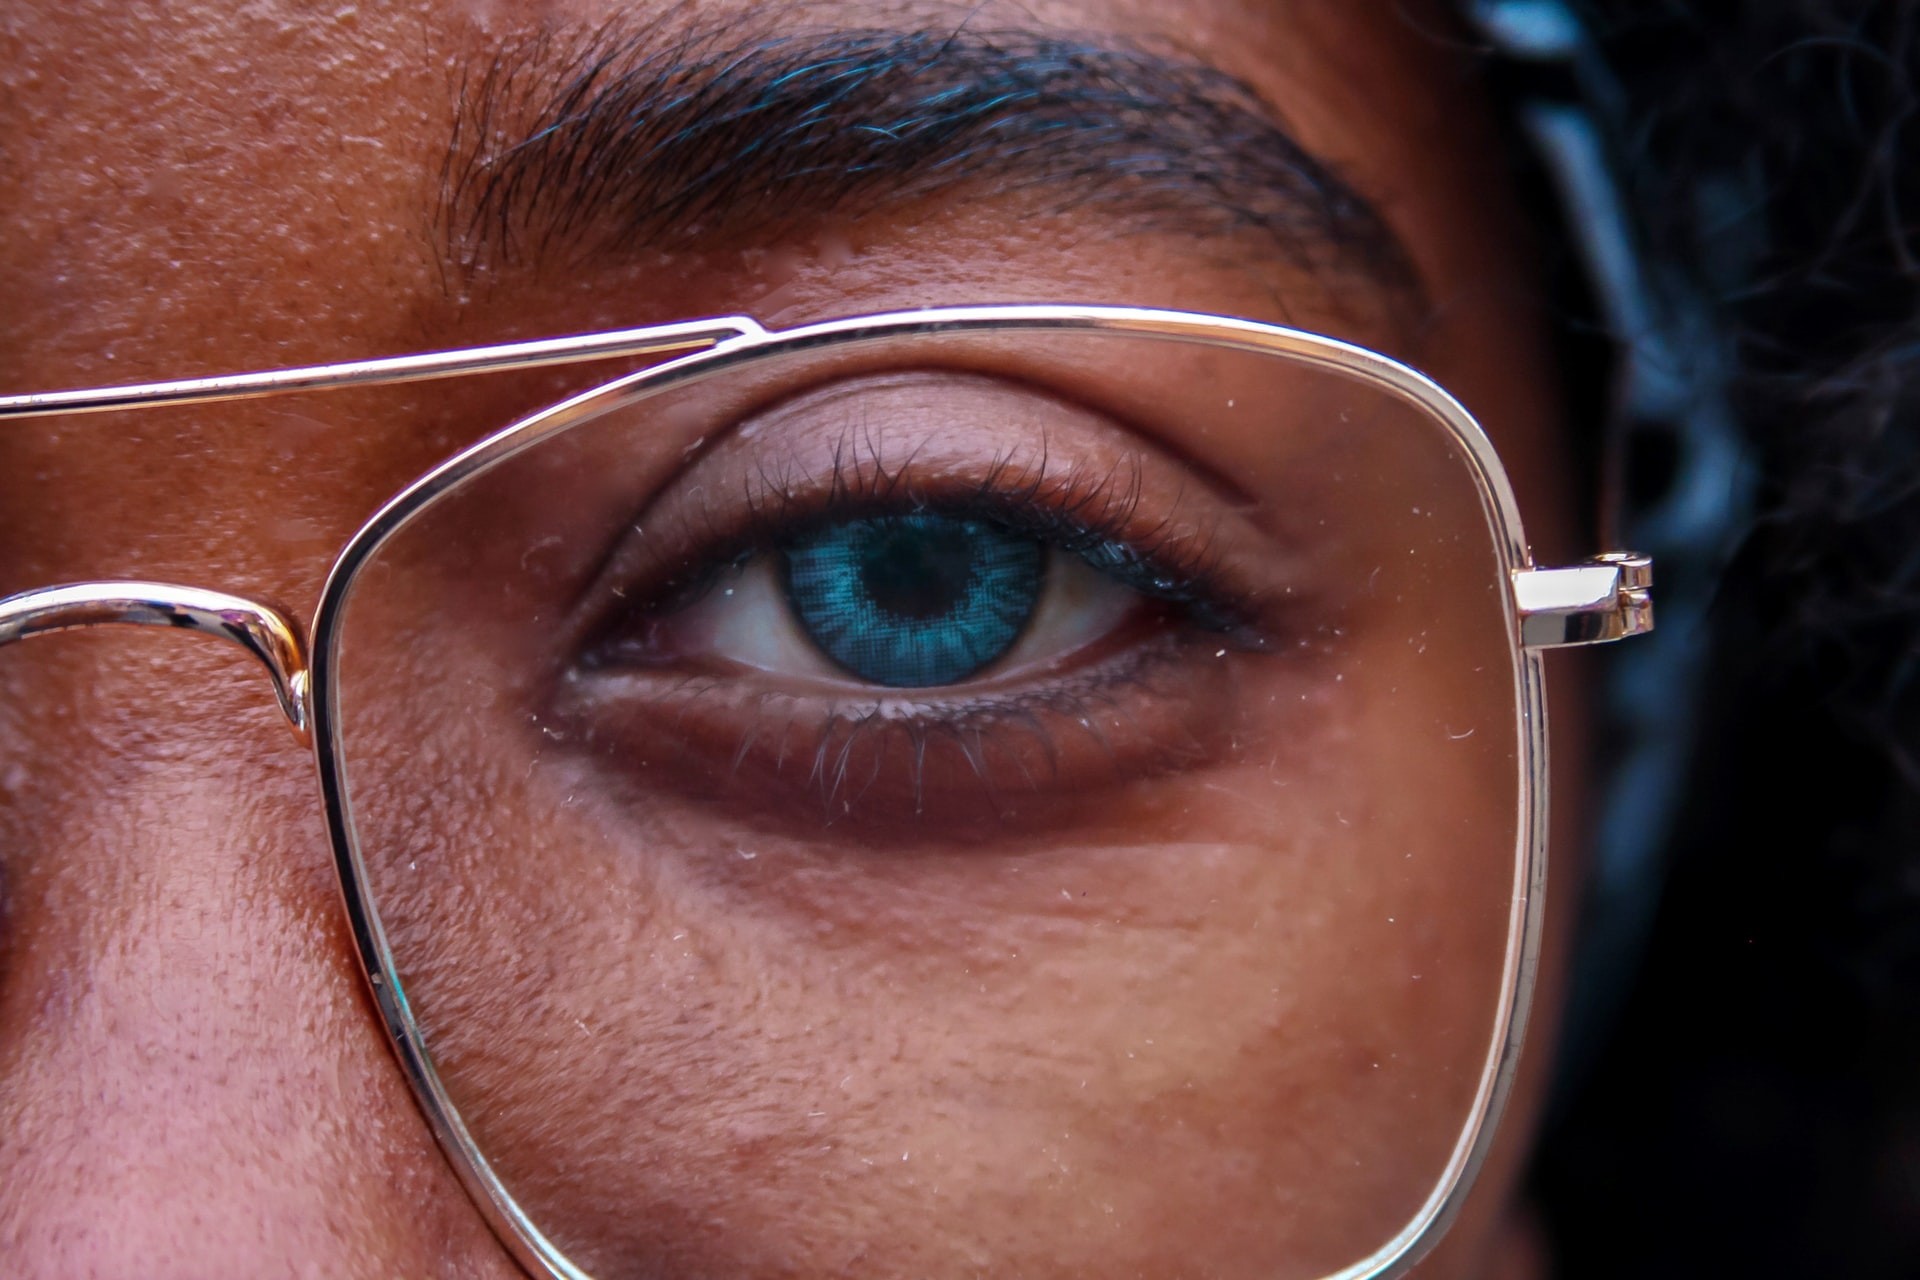 Dor nos olhos é principal sintoma da Covid-19, segundo estudo (Foto:  Melanie Kreutz/Unsplash)